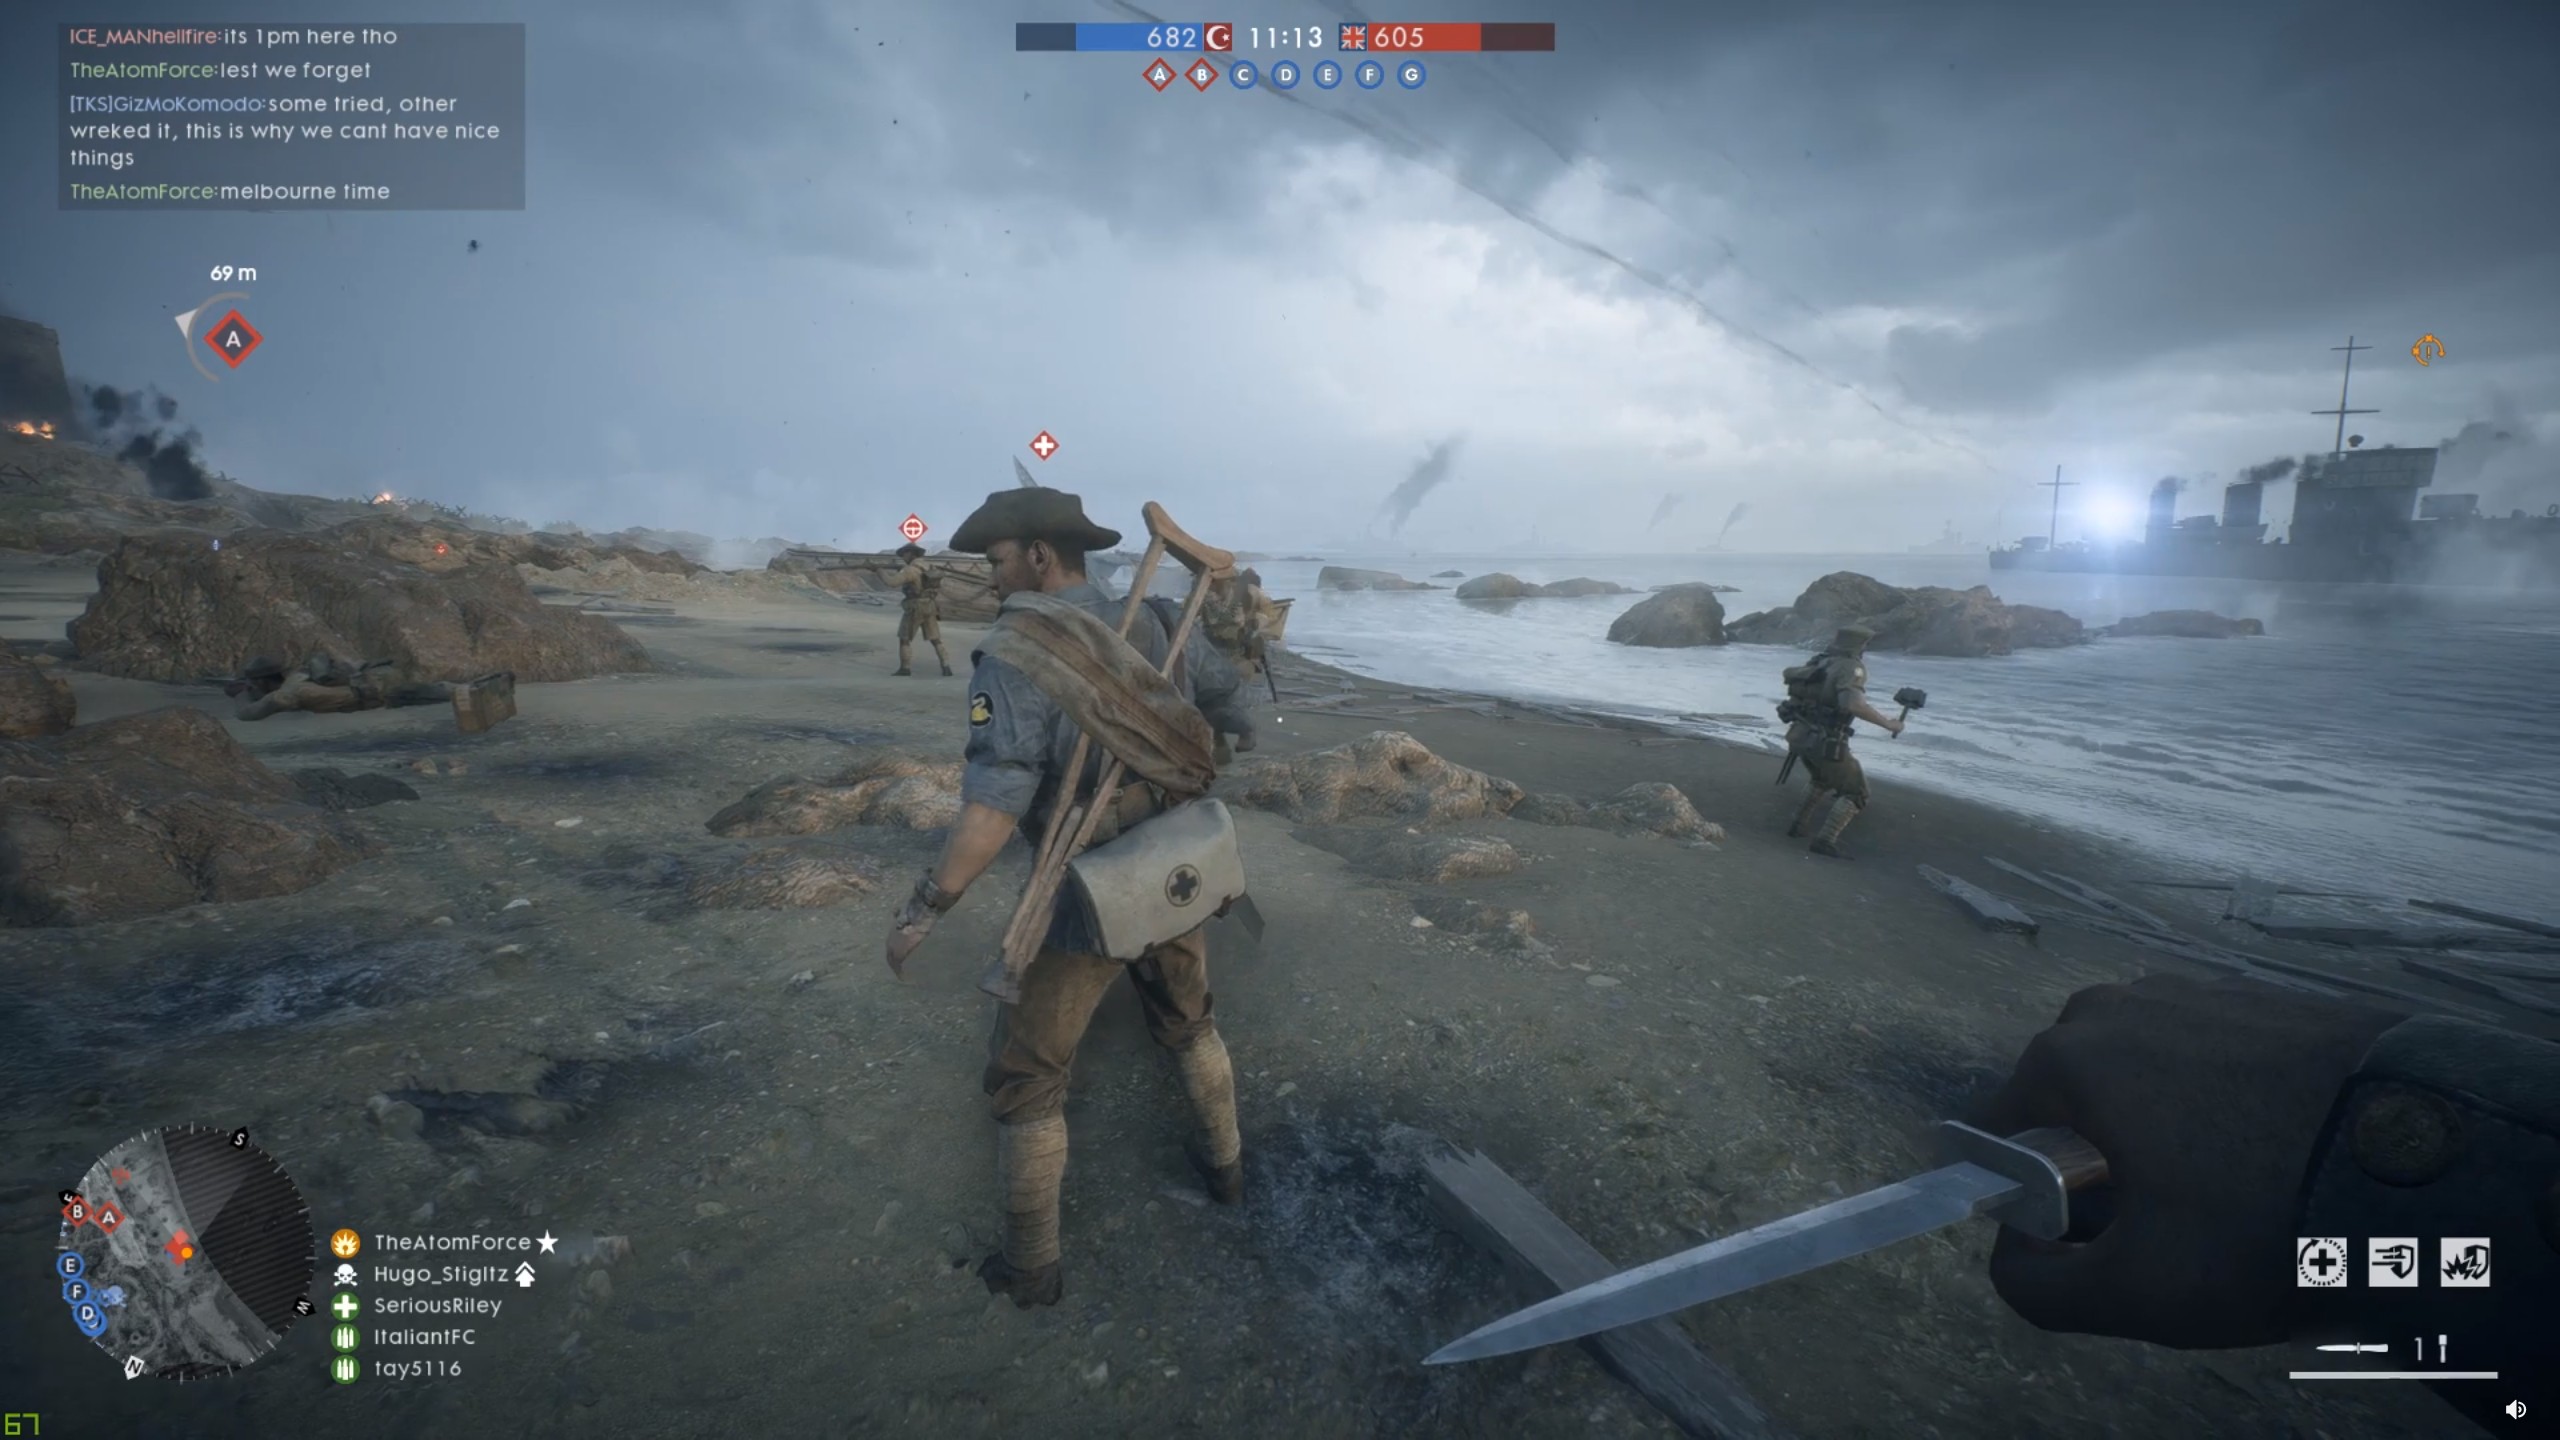 युद्ध के मैदान 1 खिलाड़ी WW1 के अंत को मनाने के लिए नरसंहार रोकते हैं